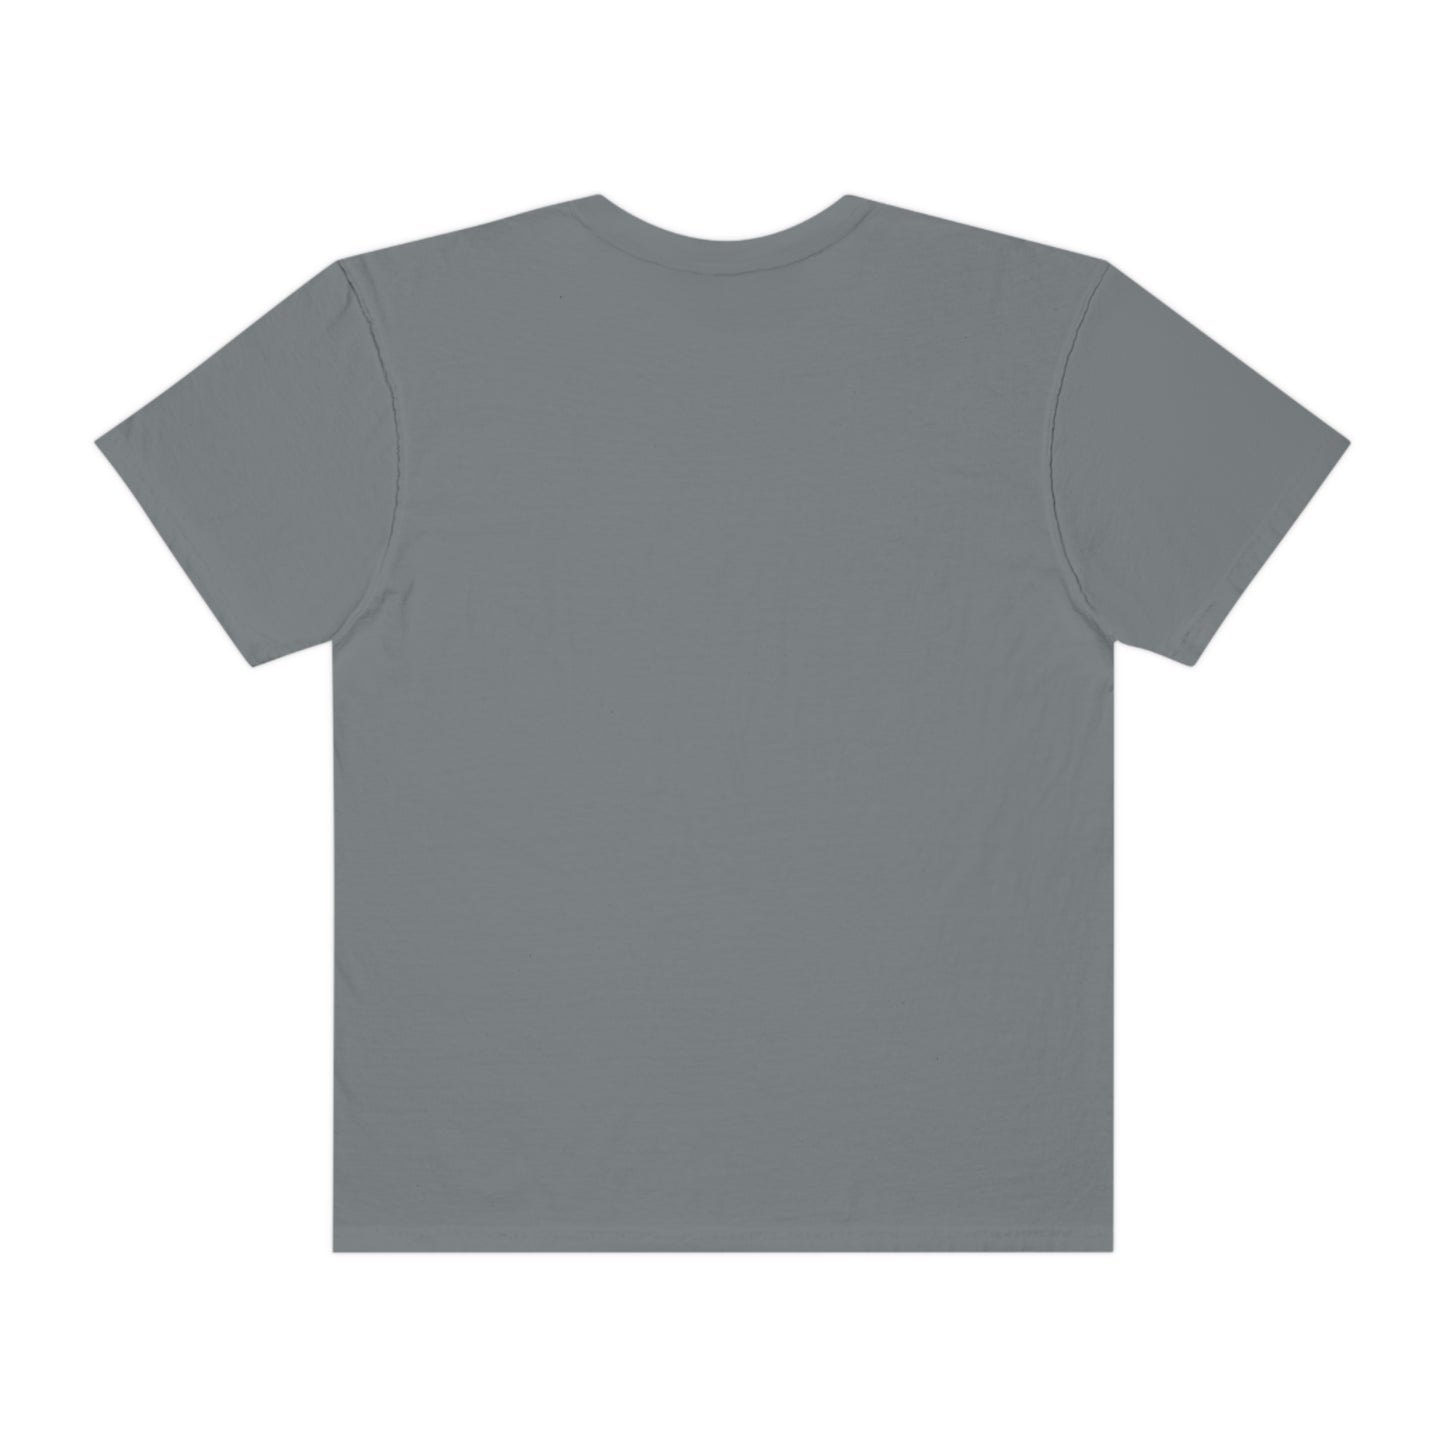 Allen Buffalo Football Unisex Garment-Dyed T-shirt